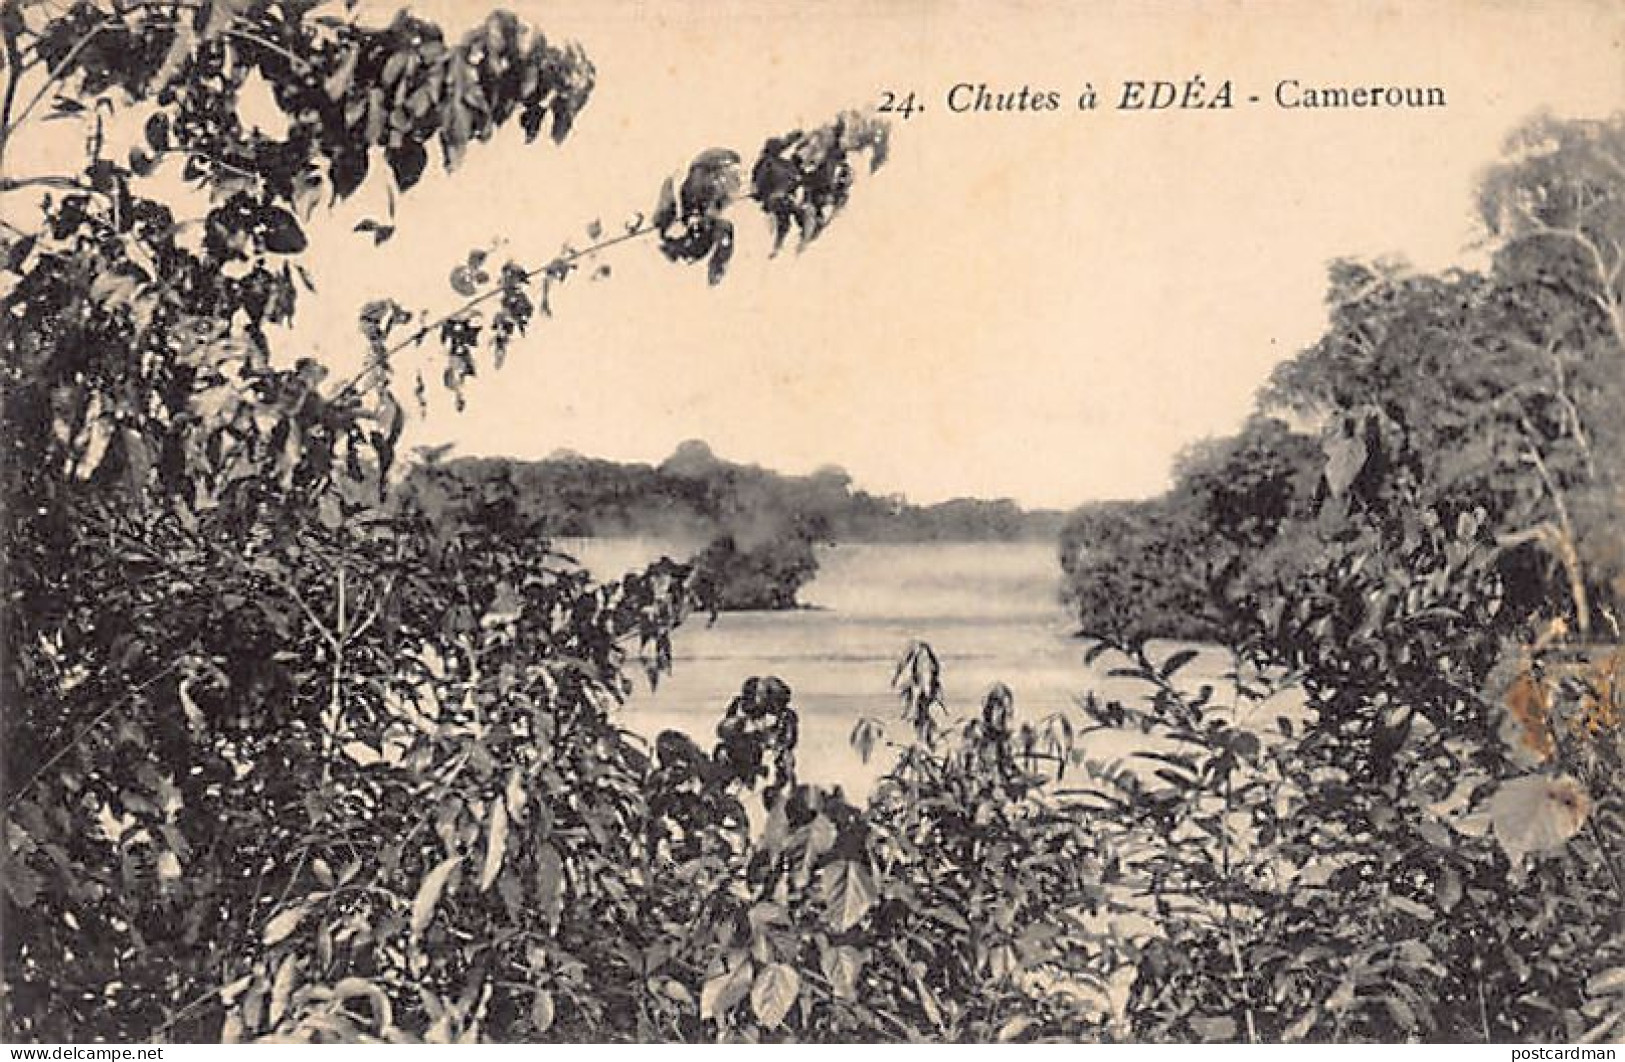 CAMEROUN - Chutes à Édéa - Ed. Favrat - I.P.M. 24 - Cameroun